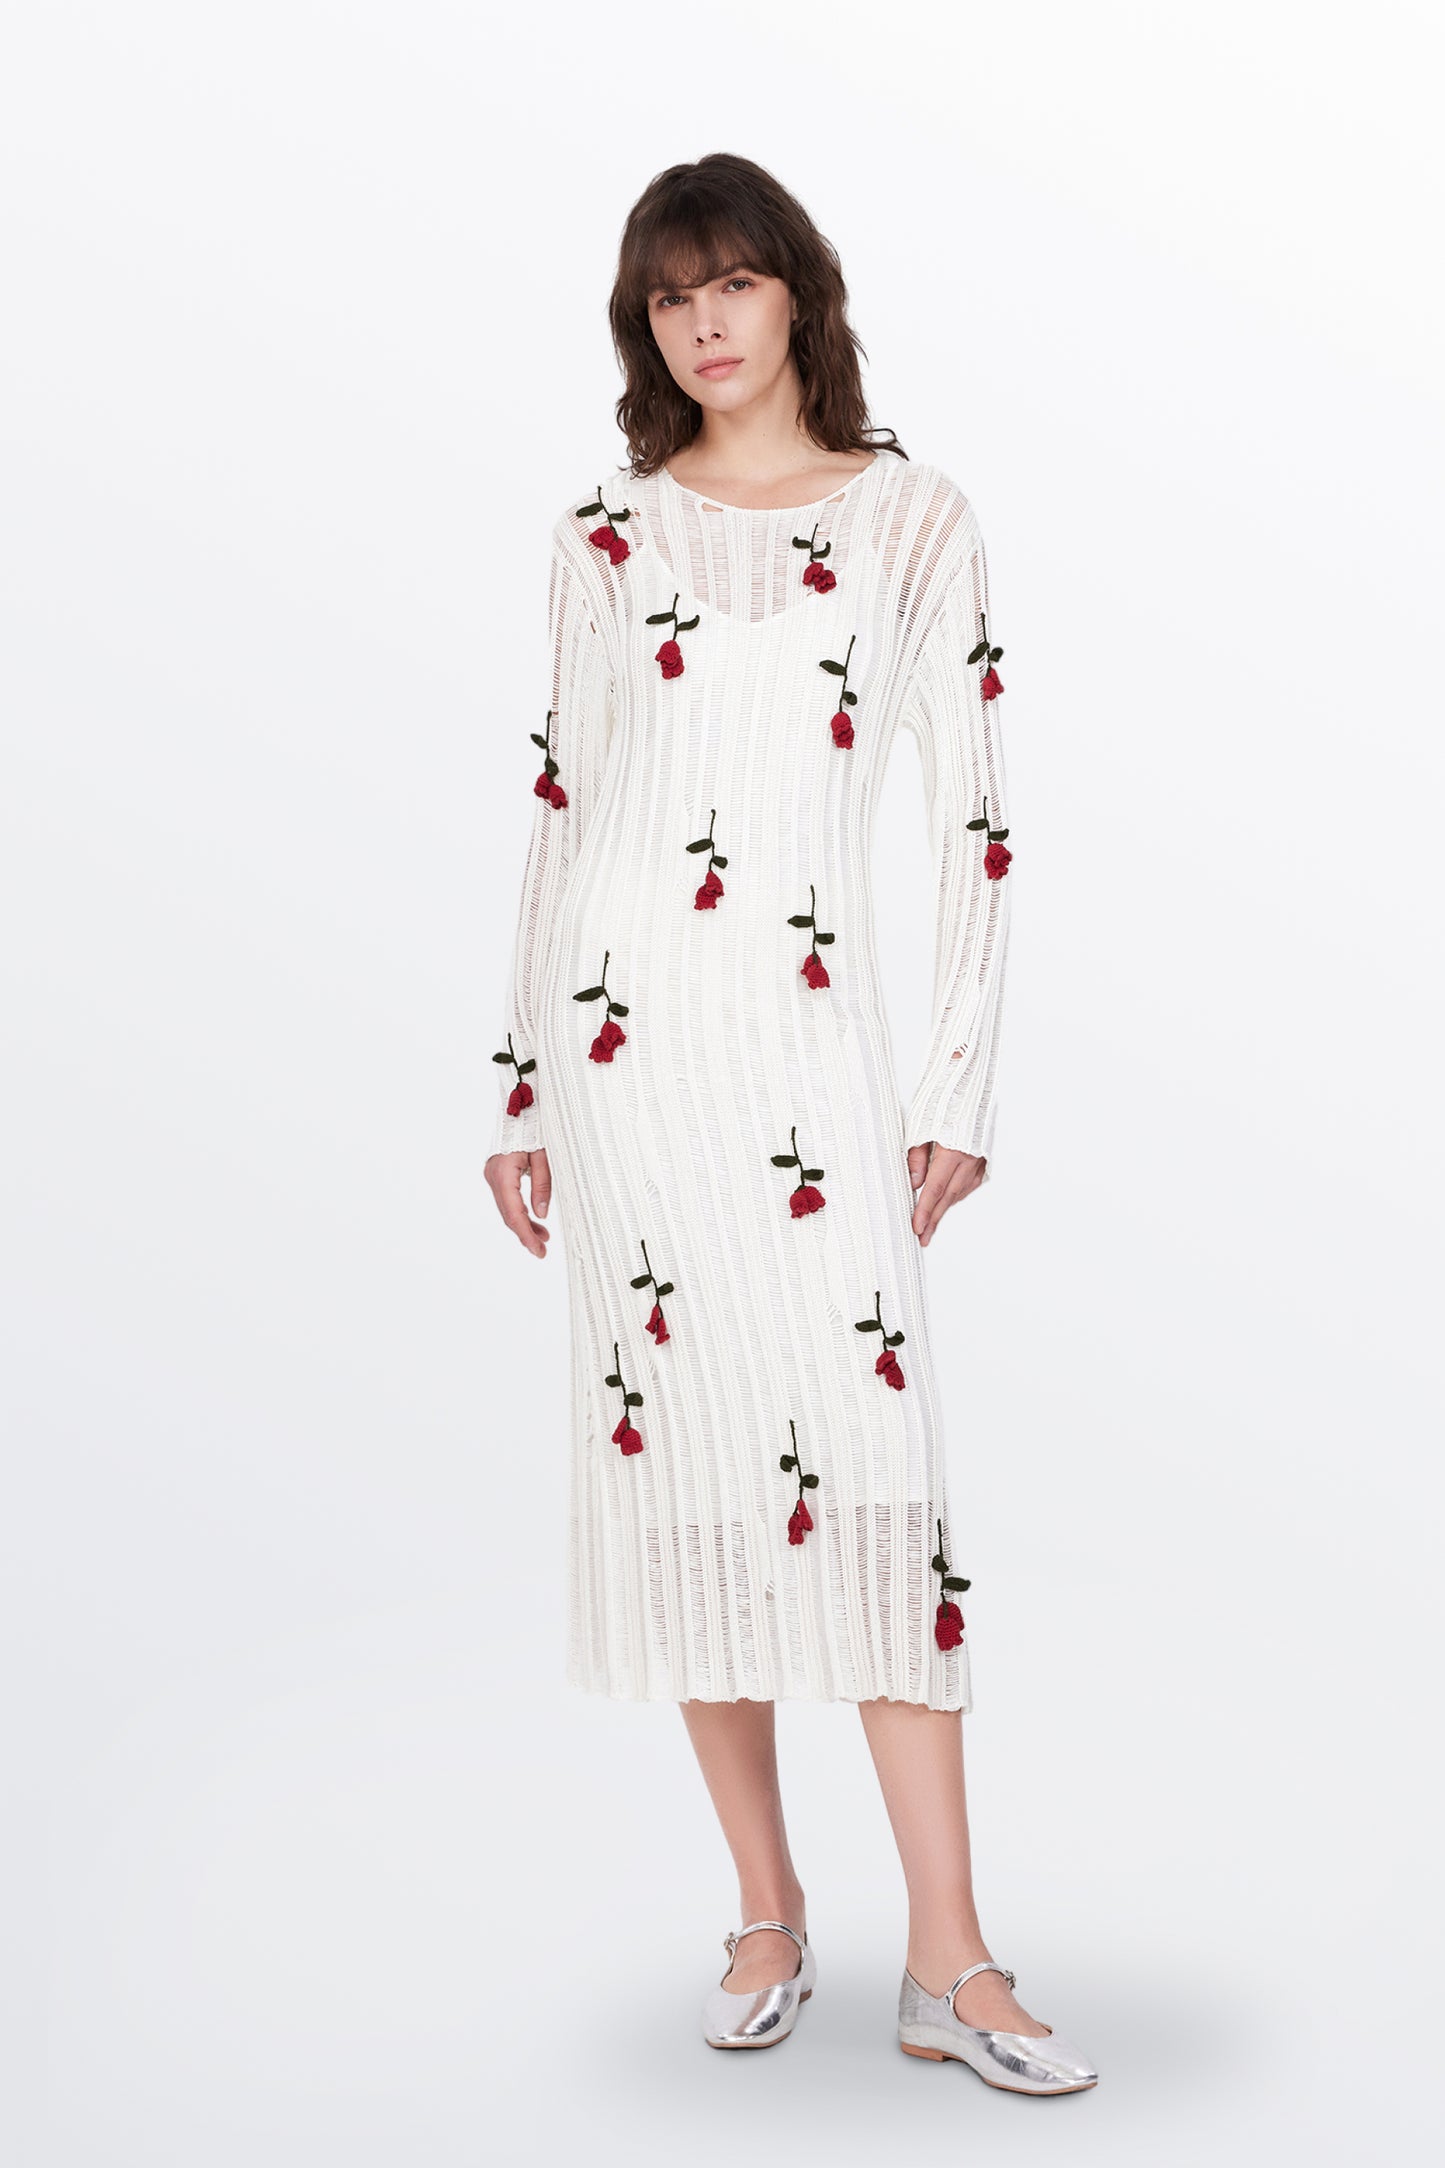 Convallaria Handcrafted Crochet Dress in Cotton Viscose Knit